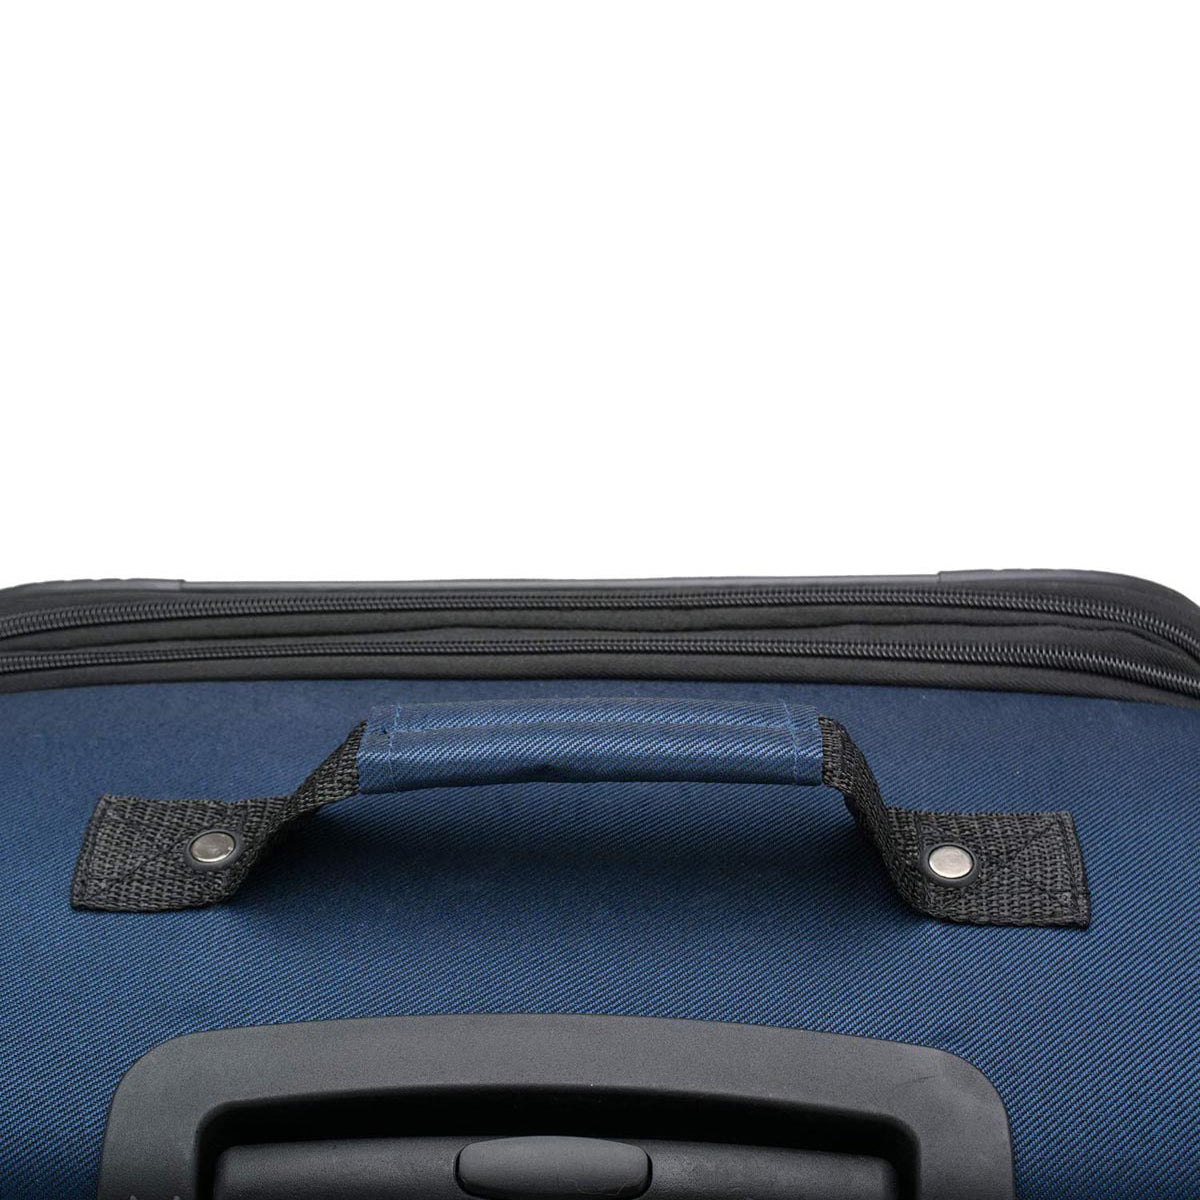 U.S. Traveler Aviron Bay Expandable Softside Luggage